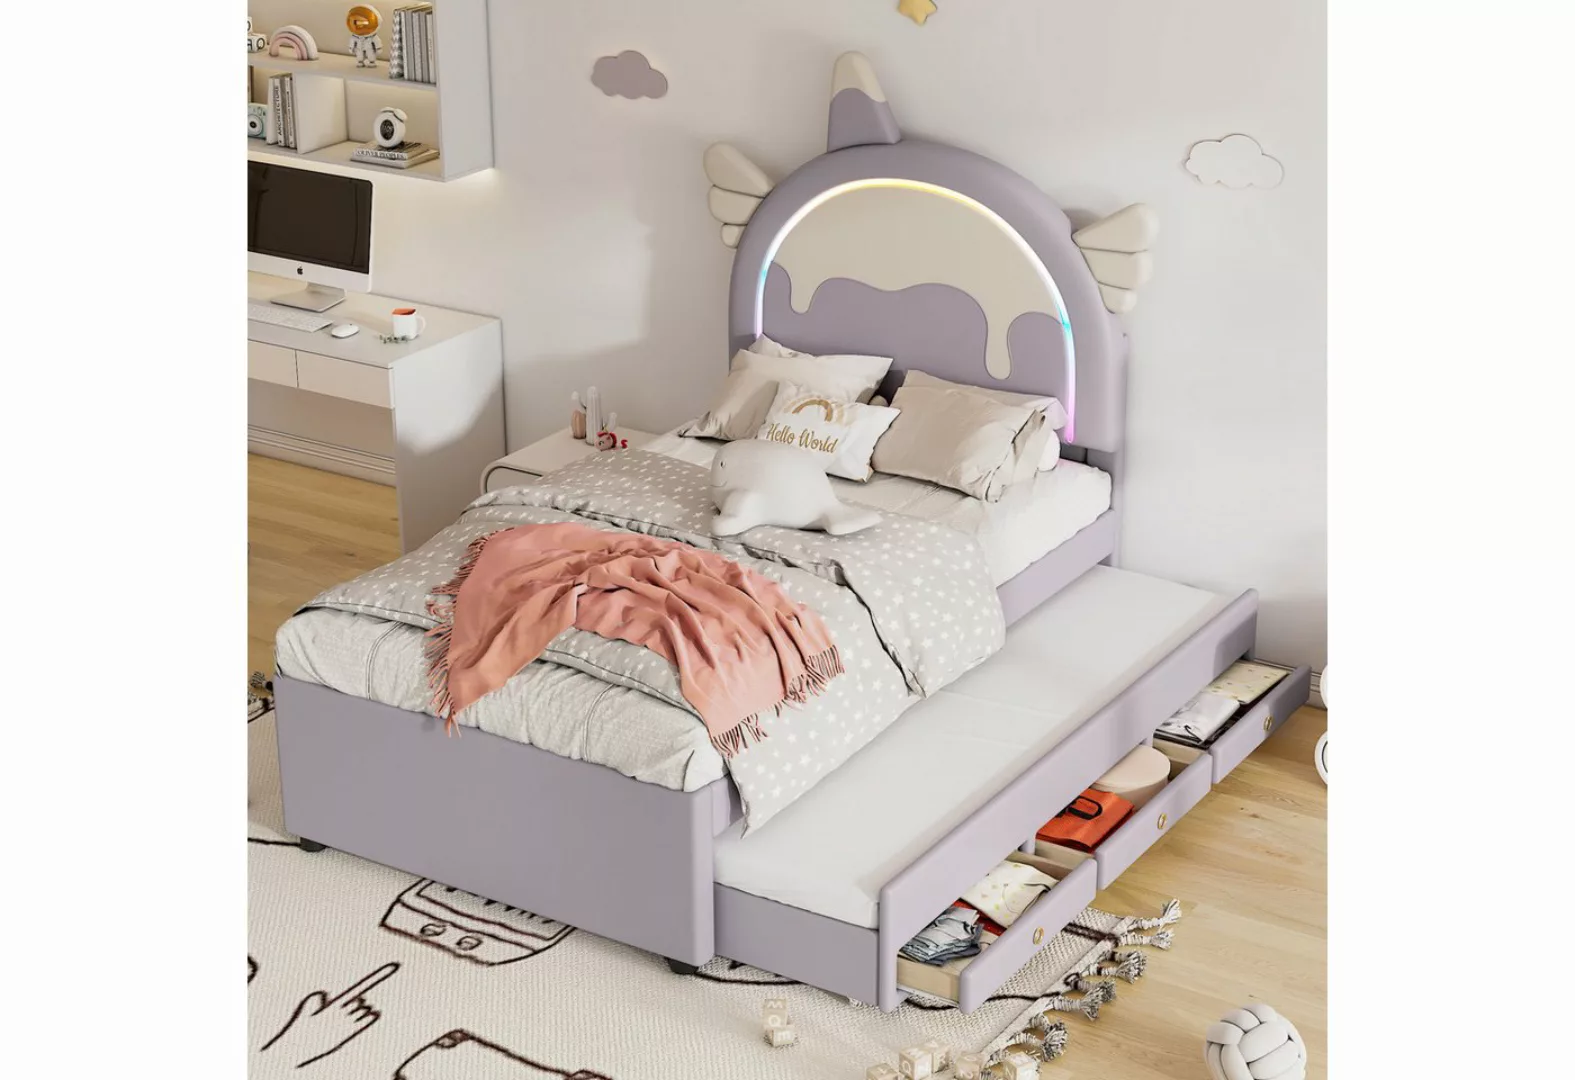 Fangqi Kinderbett 90*200cm Cartoon Kinderbett, Einhornform, mit ausziehbare günstig online kaufen